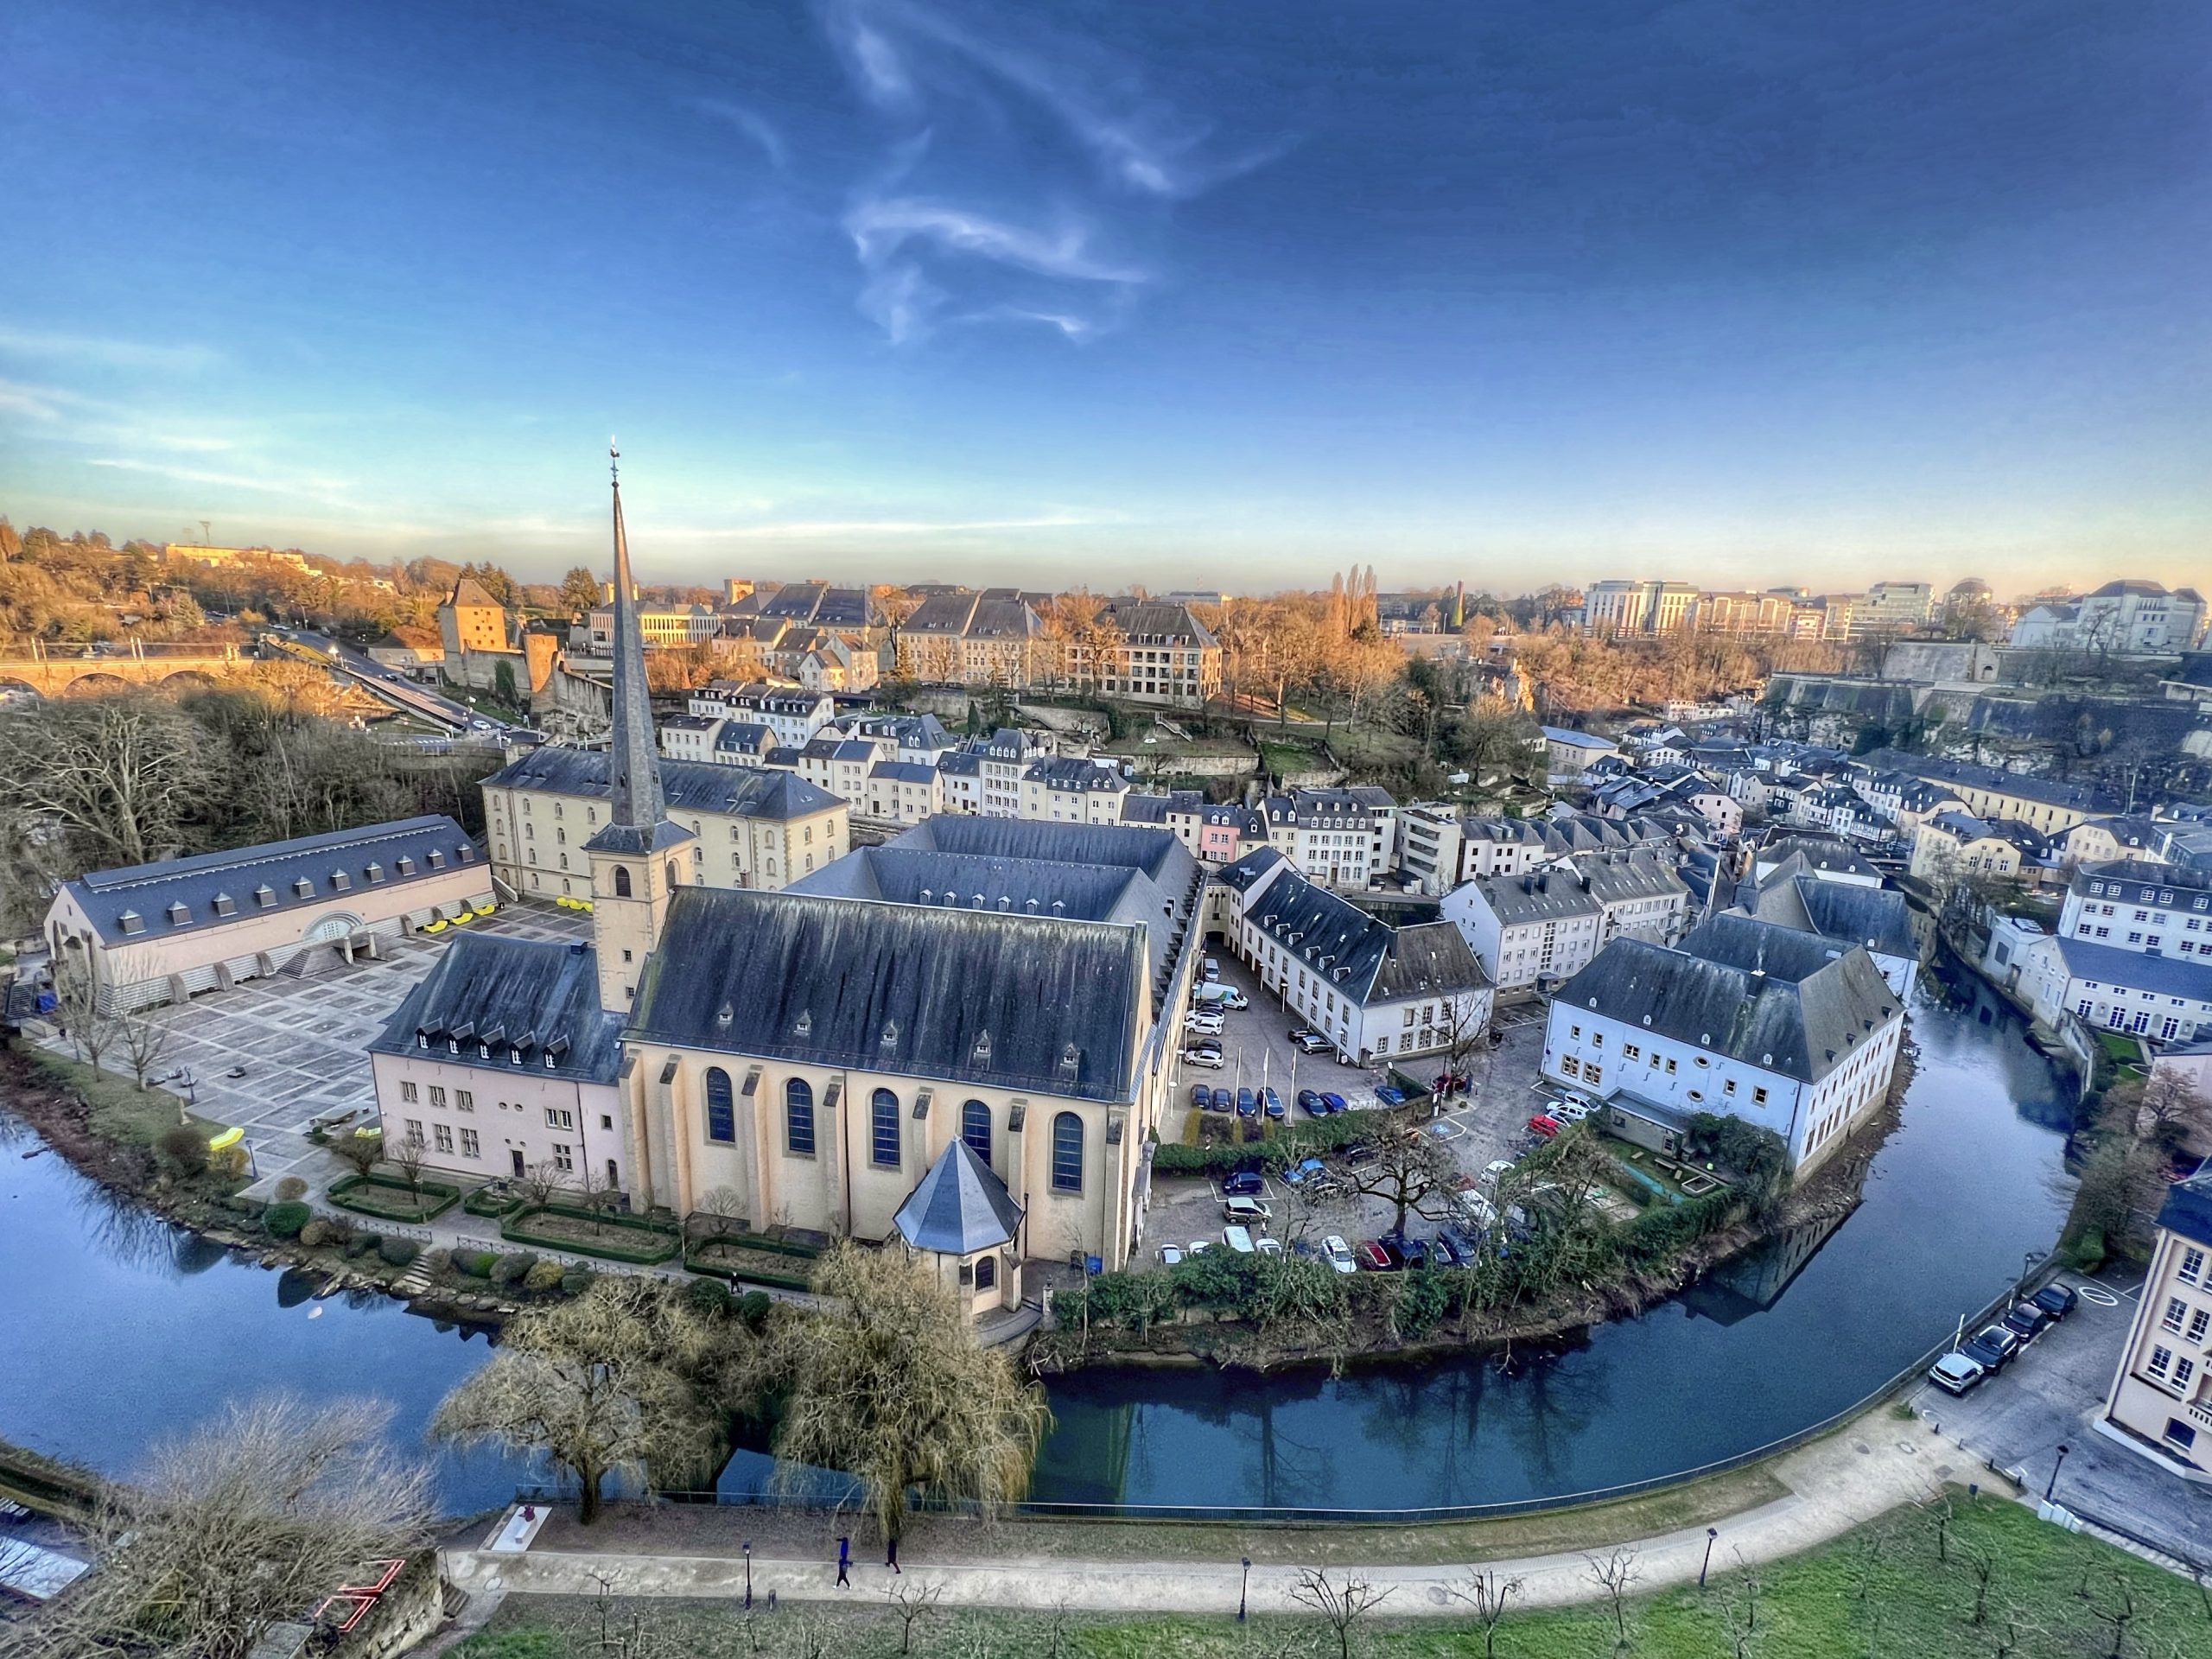 luxemburg legszebb látnivalói